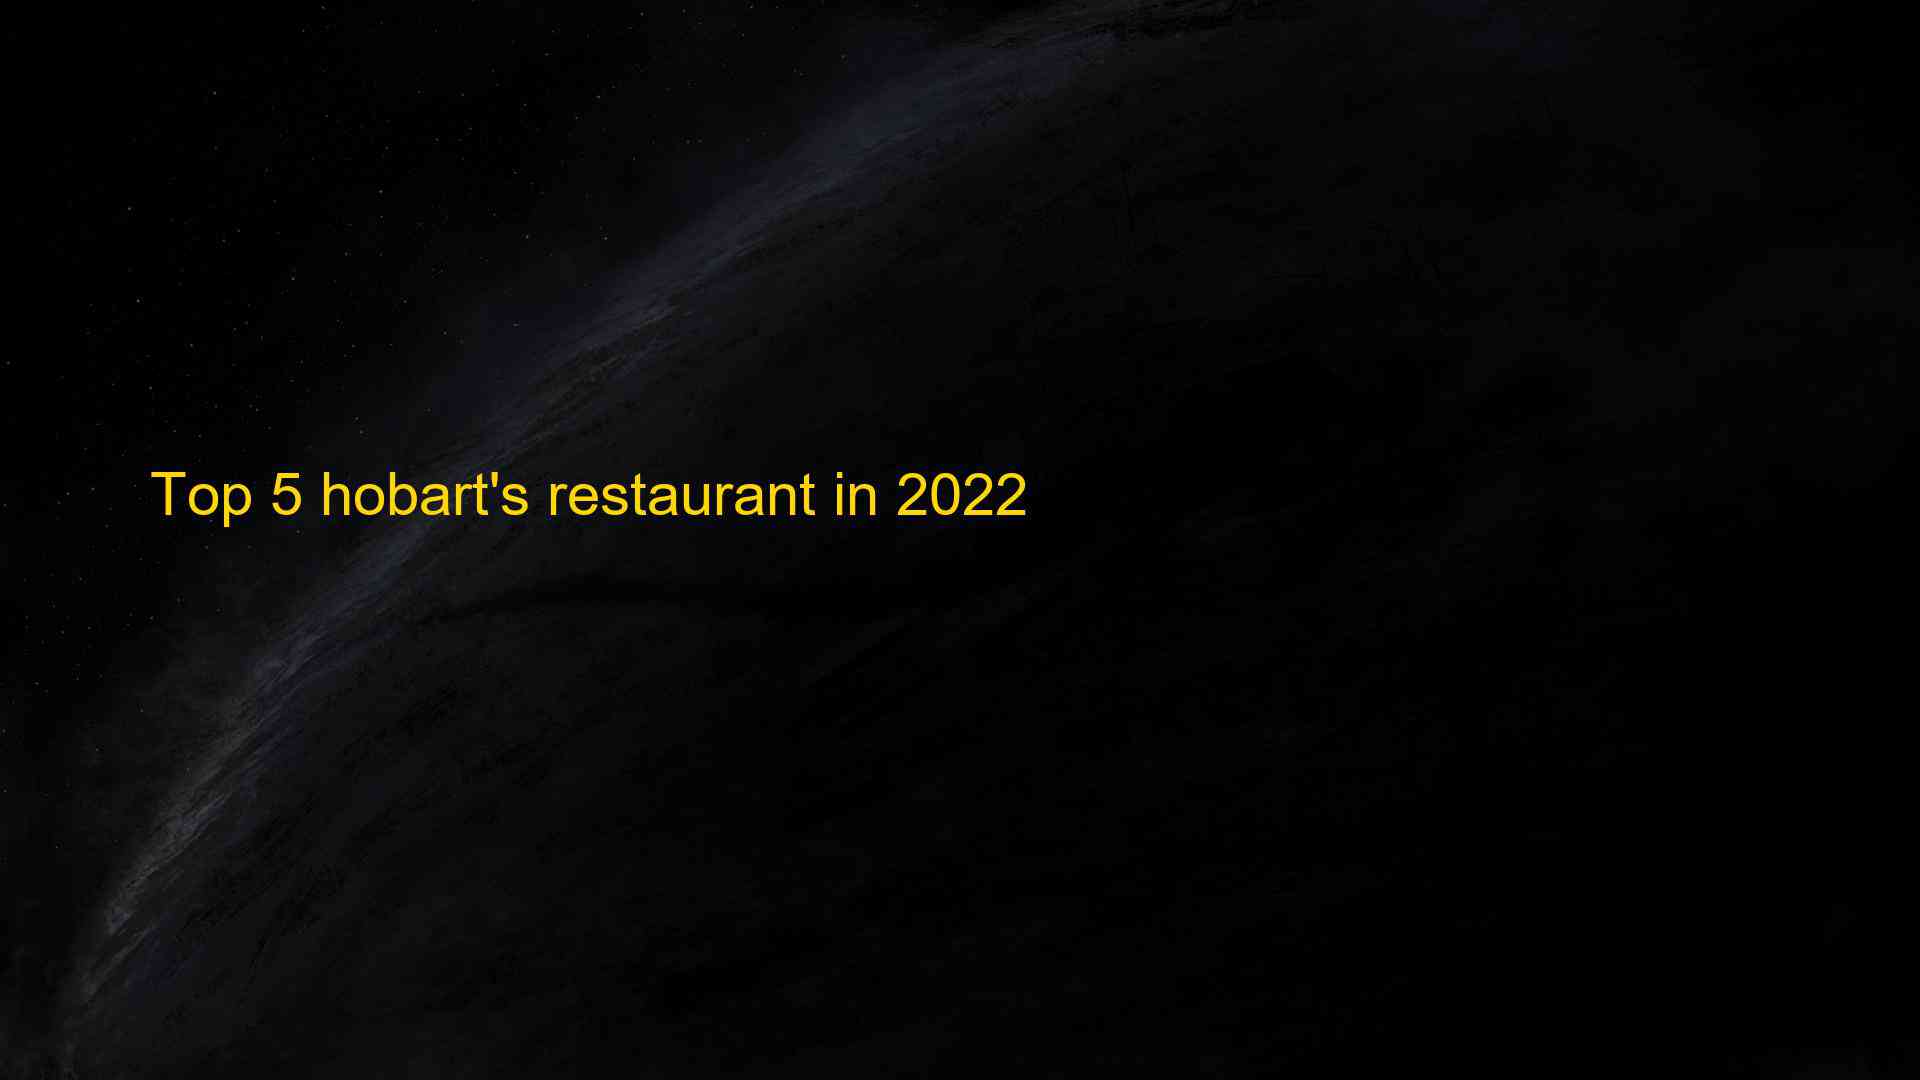 Top 5 hobarts restaurant in 2022 1663409528